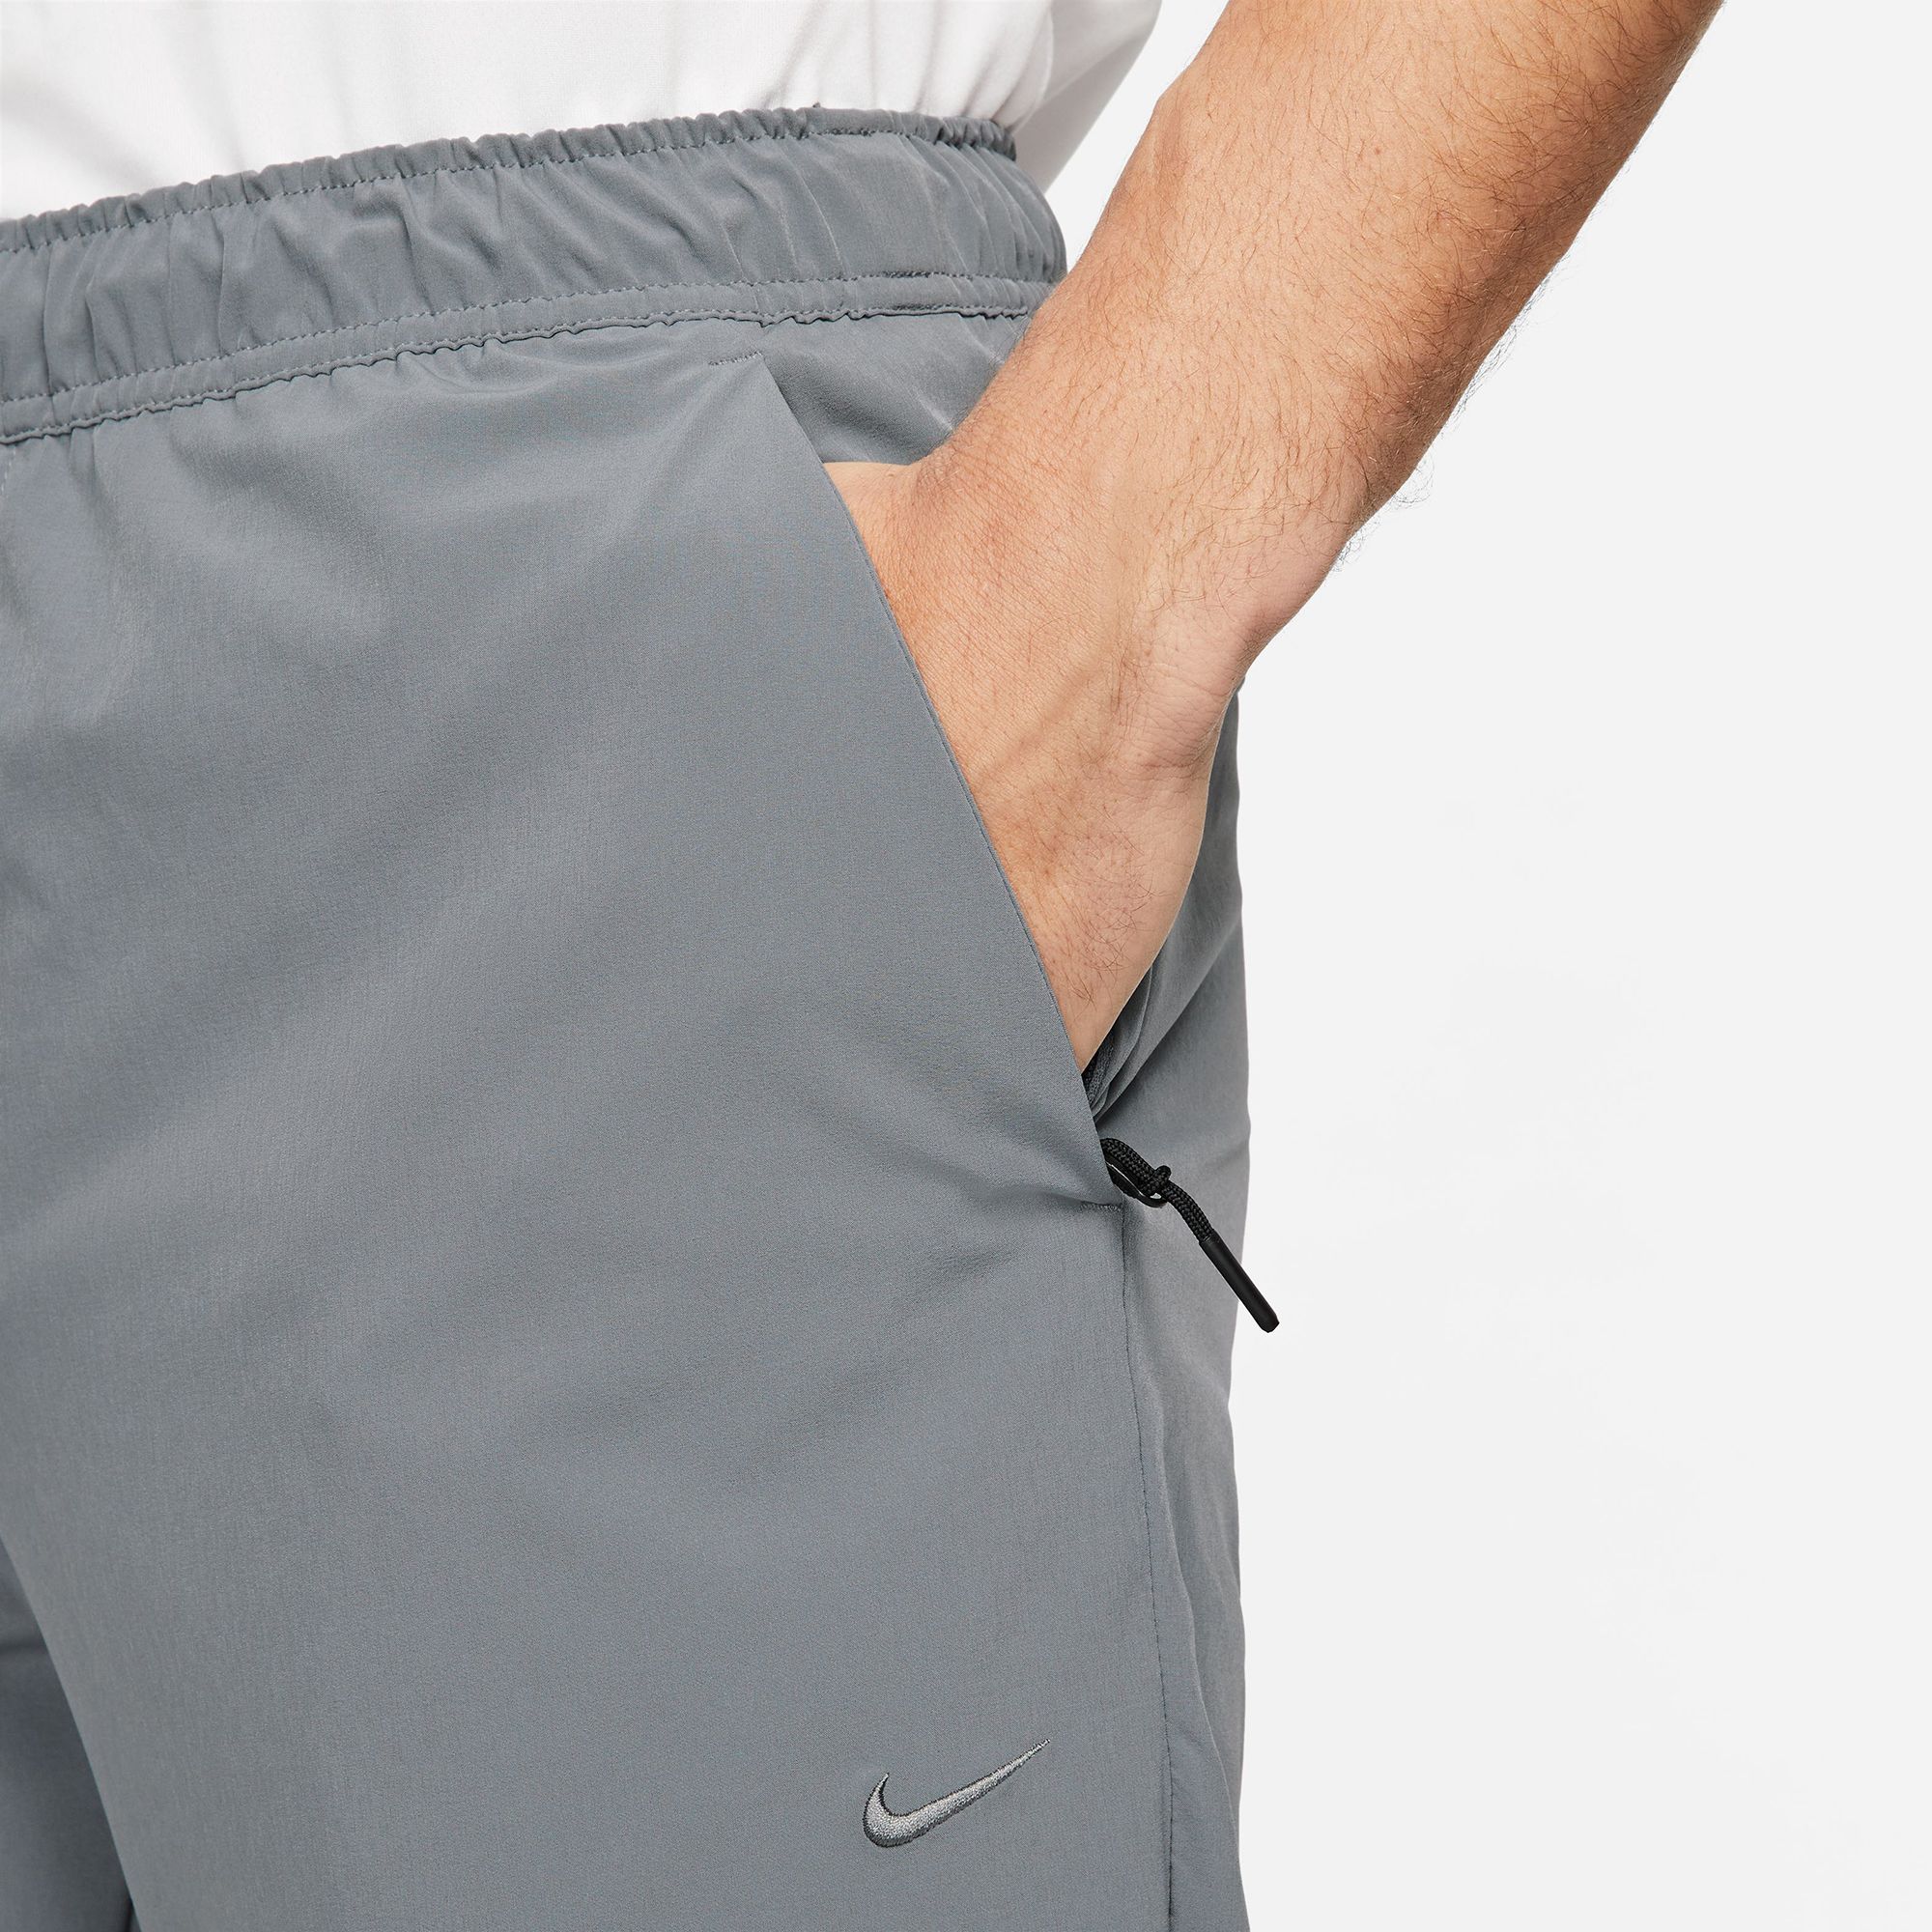 VRST Men's Limitless 4-Way Stretch 5 Pocket Athletic Fit Pant